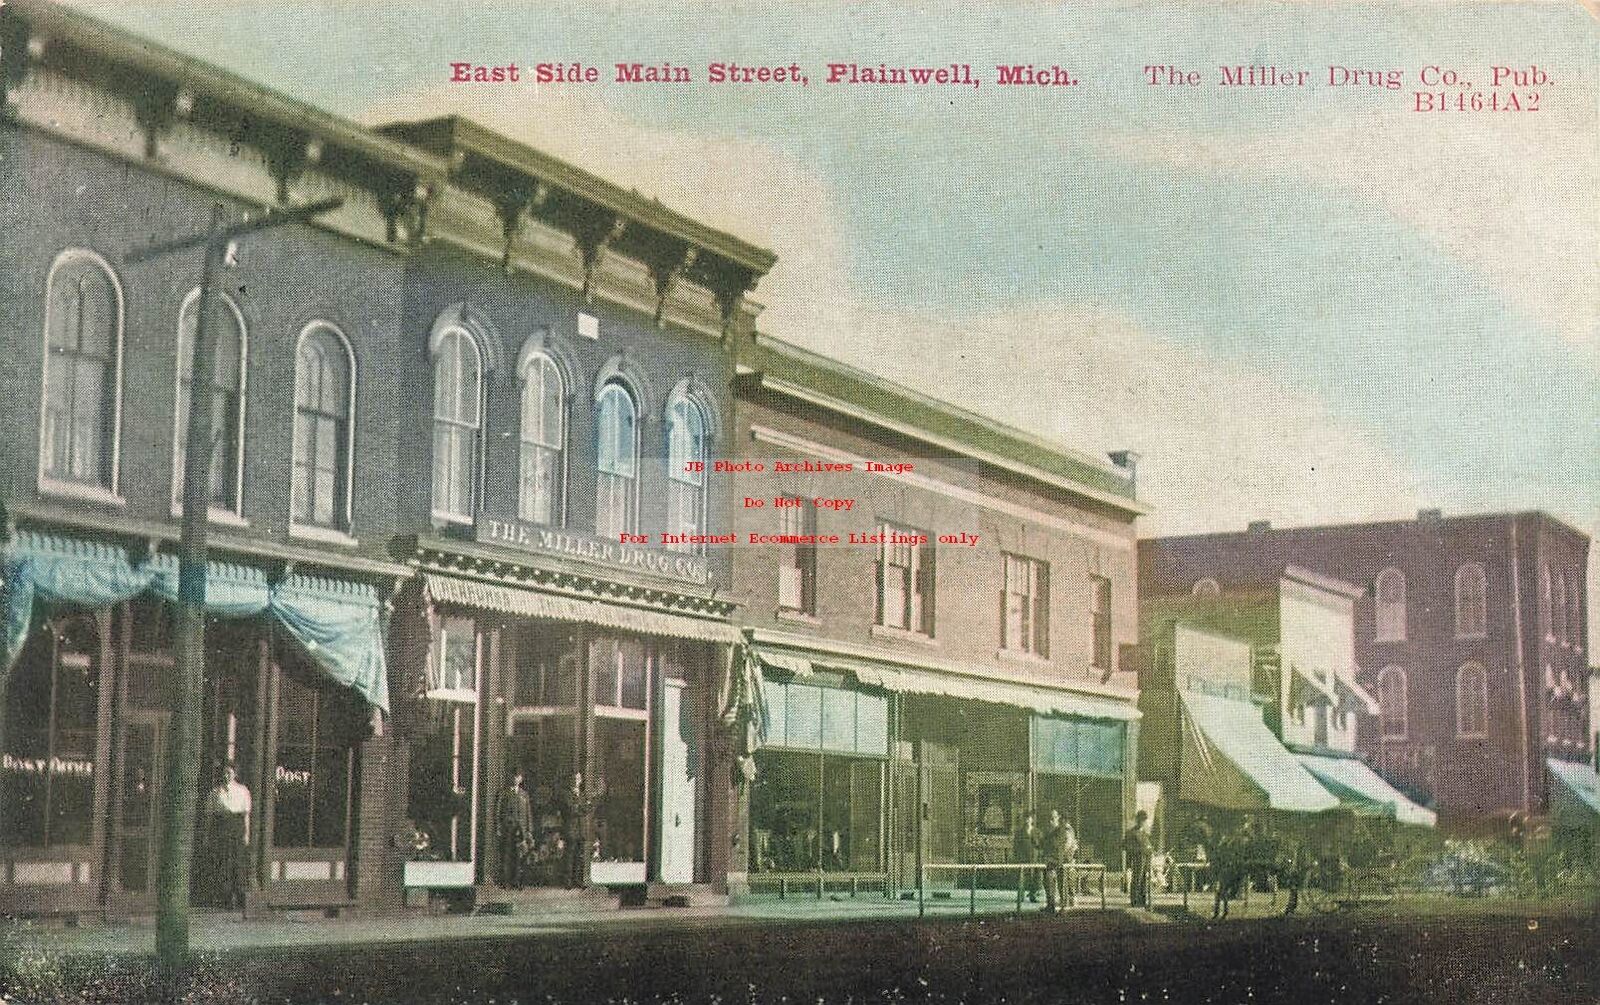 MI, Plainwell, Michigan, Main Street, East Side, Stores, 1908 PM, Zim Pub